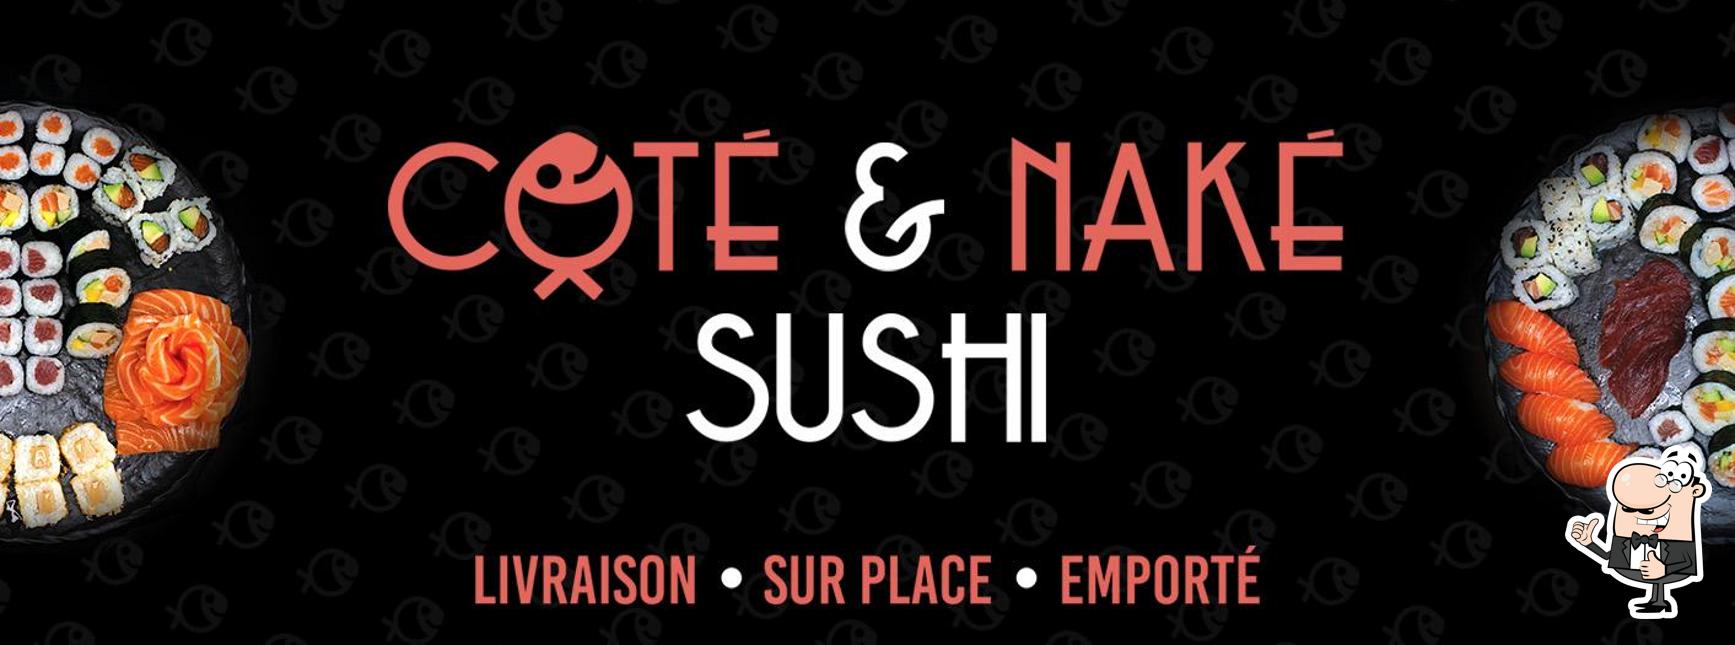 Voir cette image de Côté Et Nake Sushi